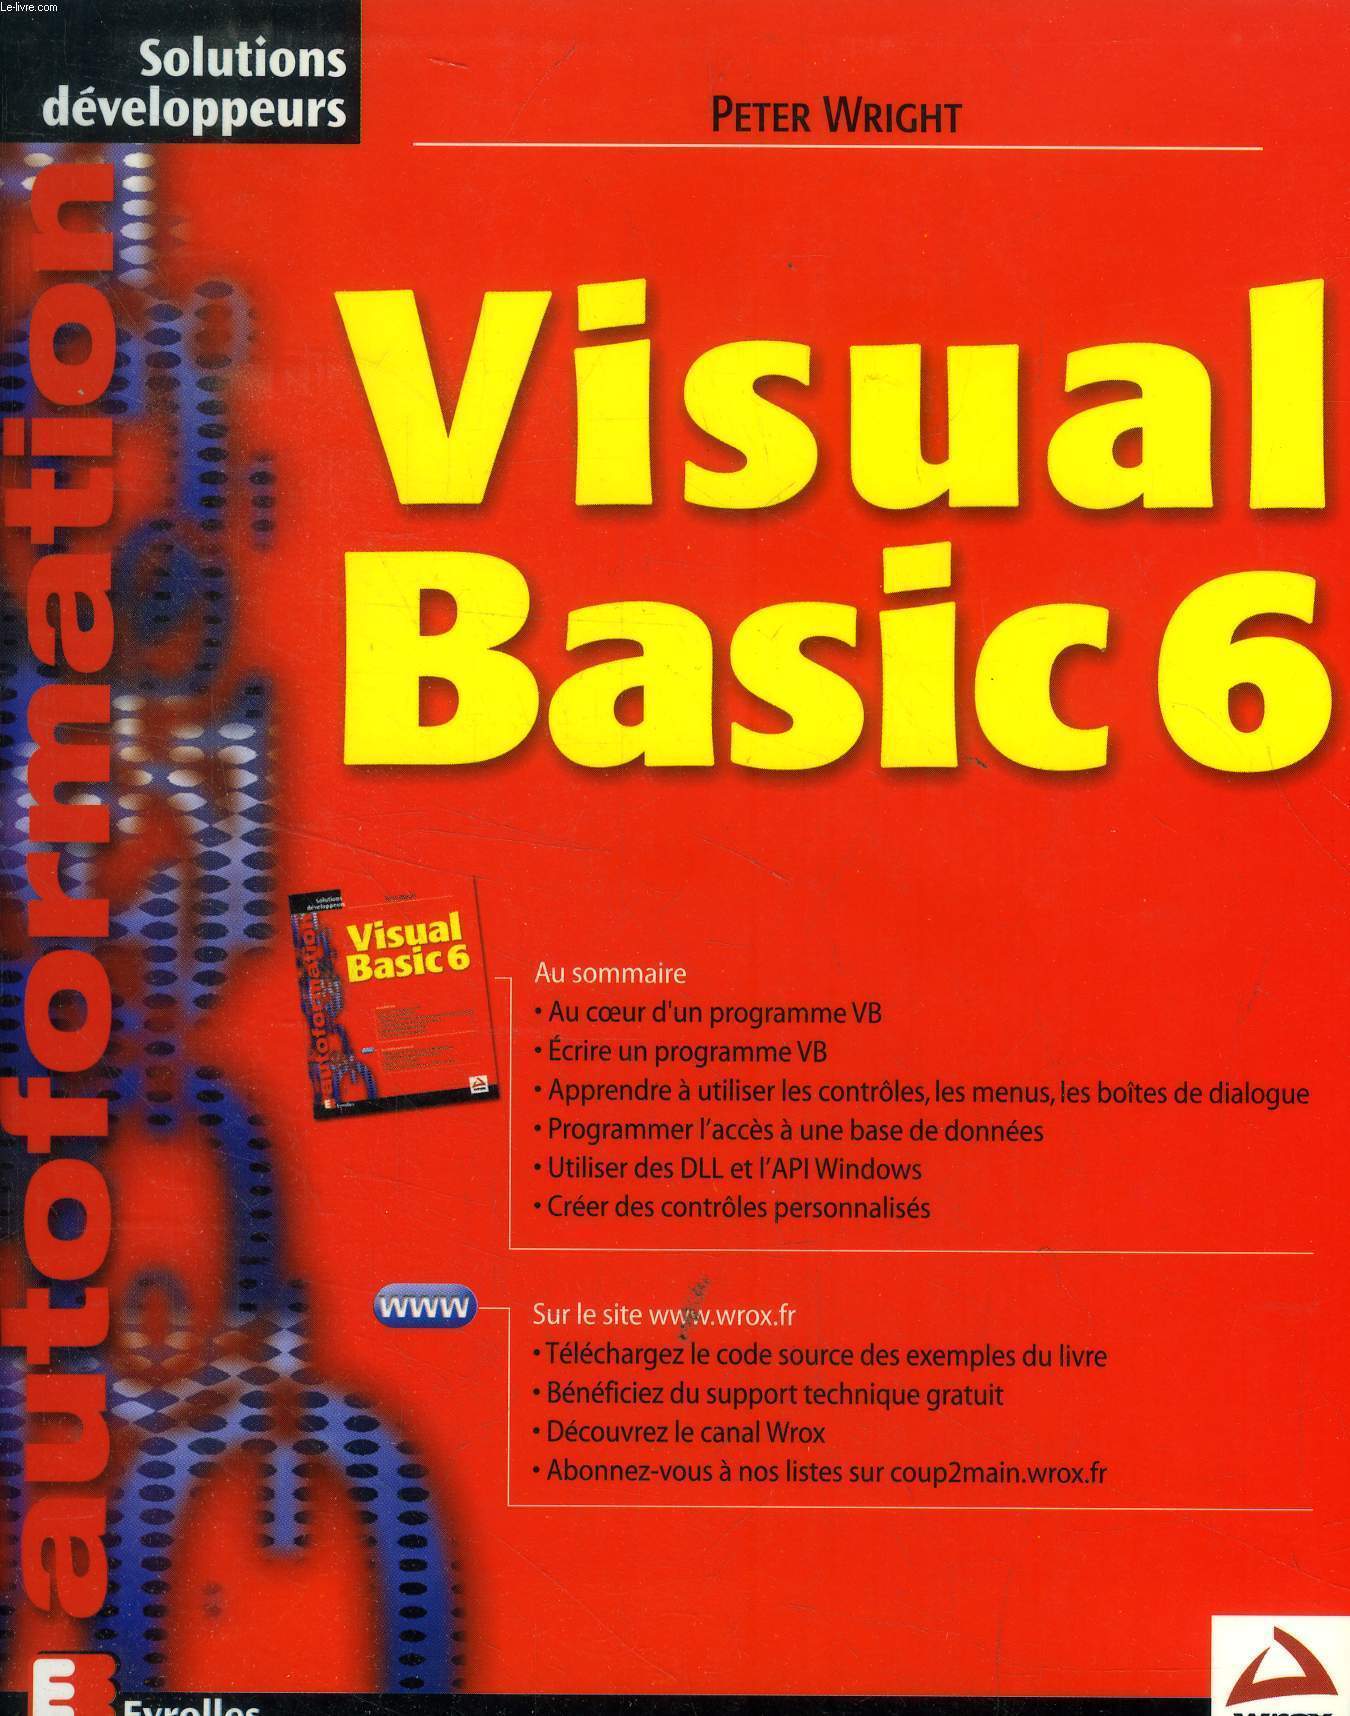 Visual basic 6